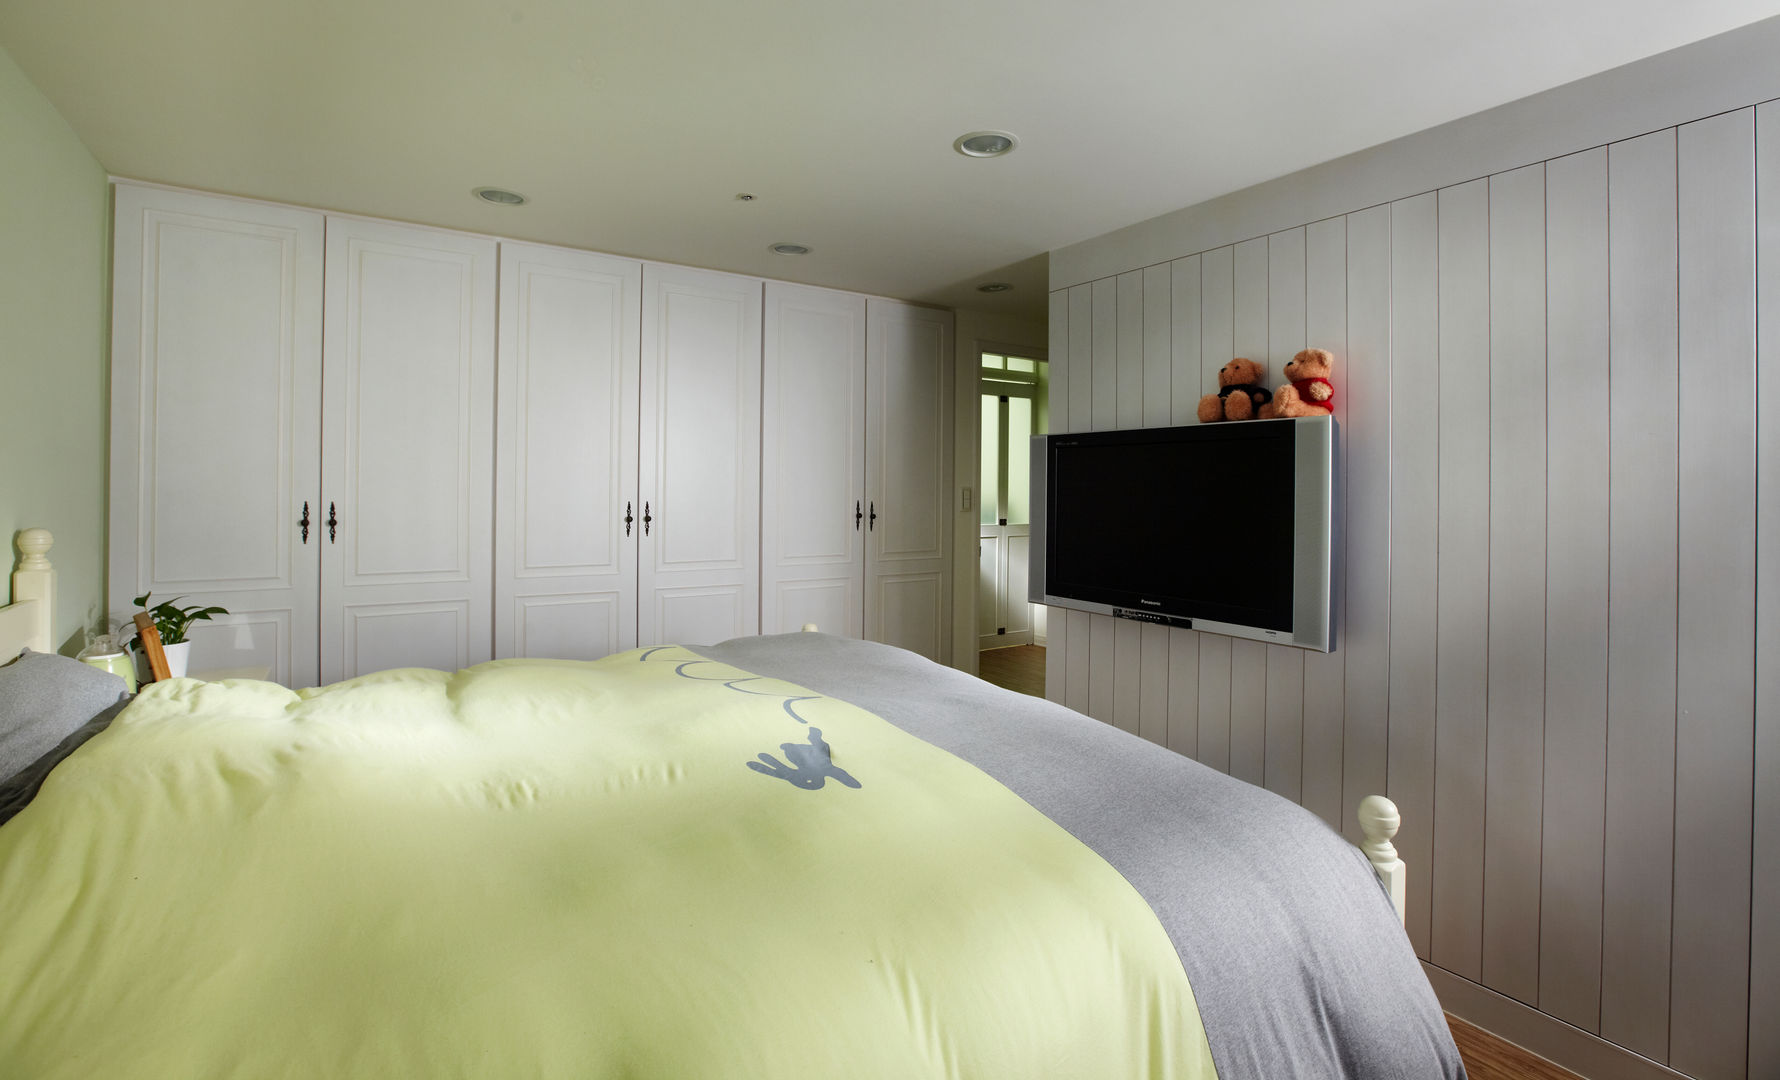 簡簡單單的線條比較多，在整體空間中卻不顯得繁複，在這樣的空間中才能夠好好的休息 弘悅國際室內裝修有限公司 Country style bedroom Plywood